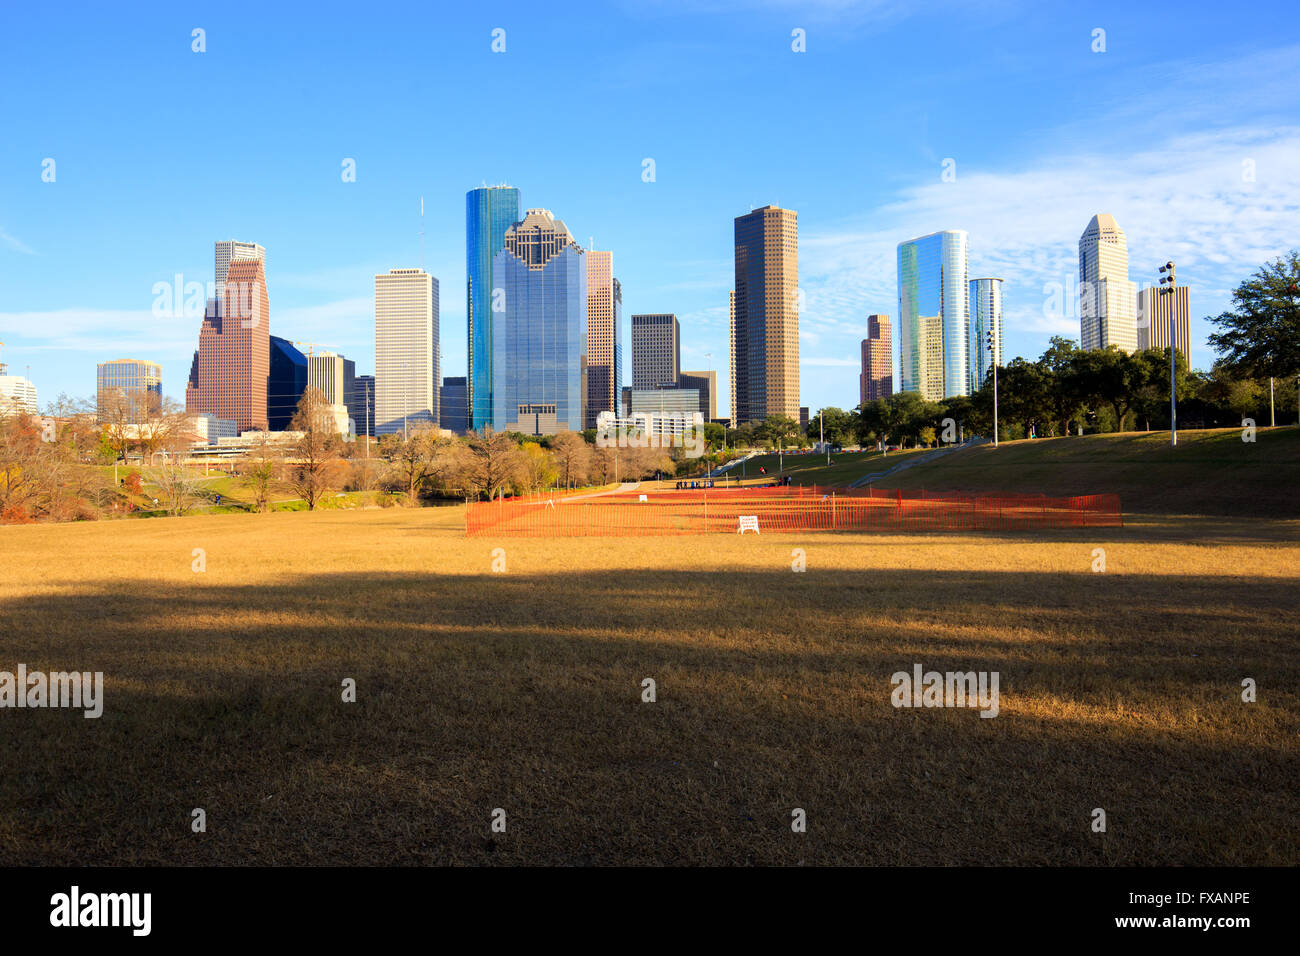 Bellissima vista del centro cittadino di Houston in una giornata di sole. Houston è la città più popolosa del Texas. Foto Stock